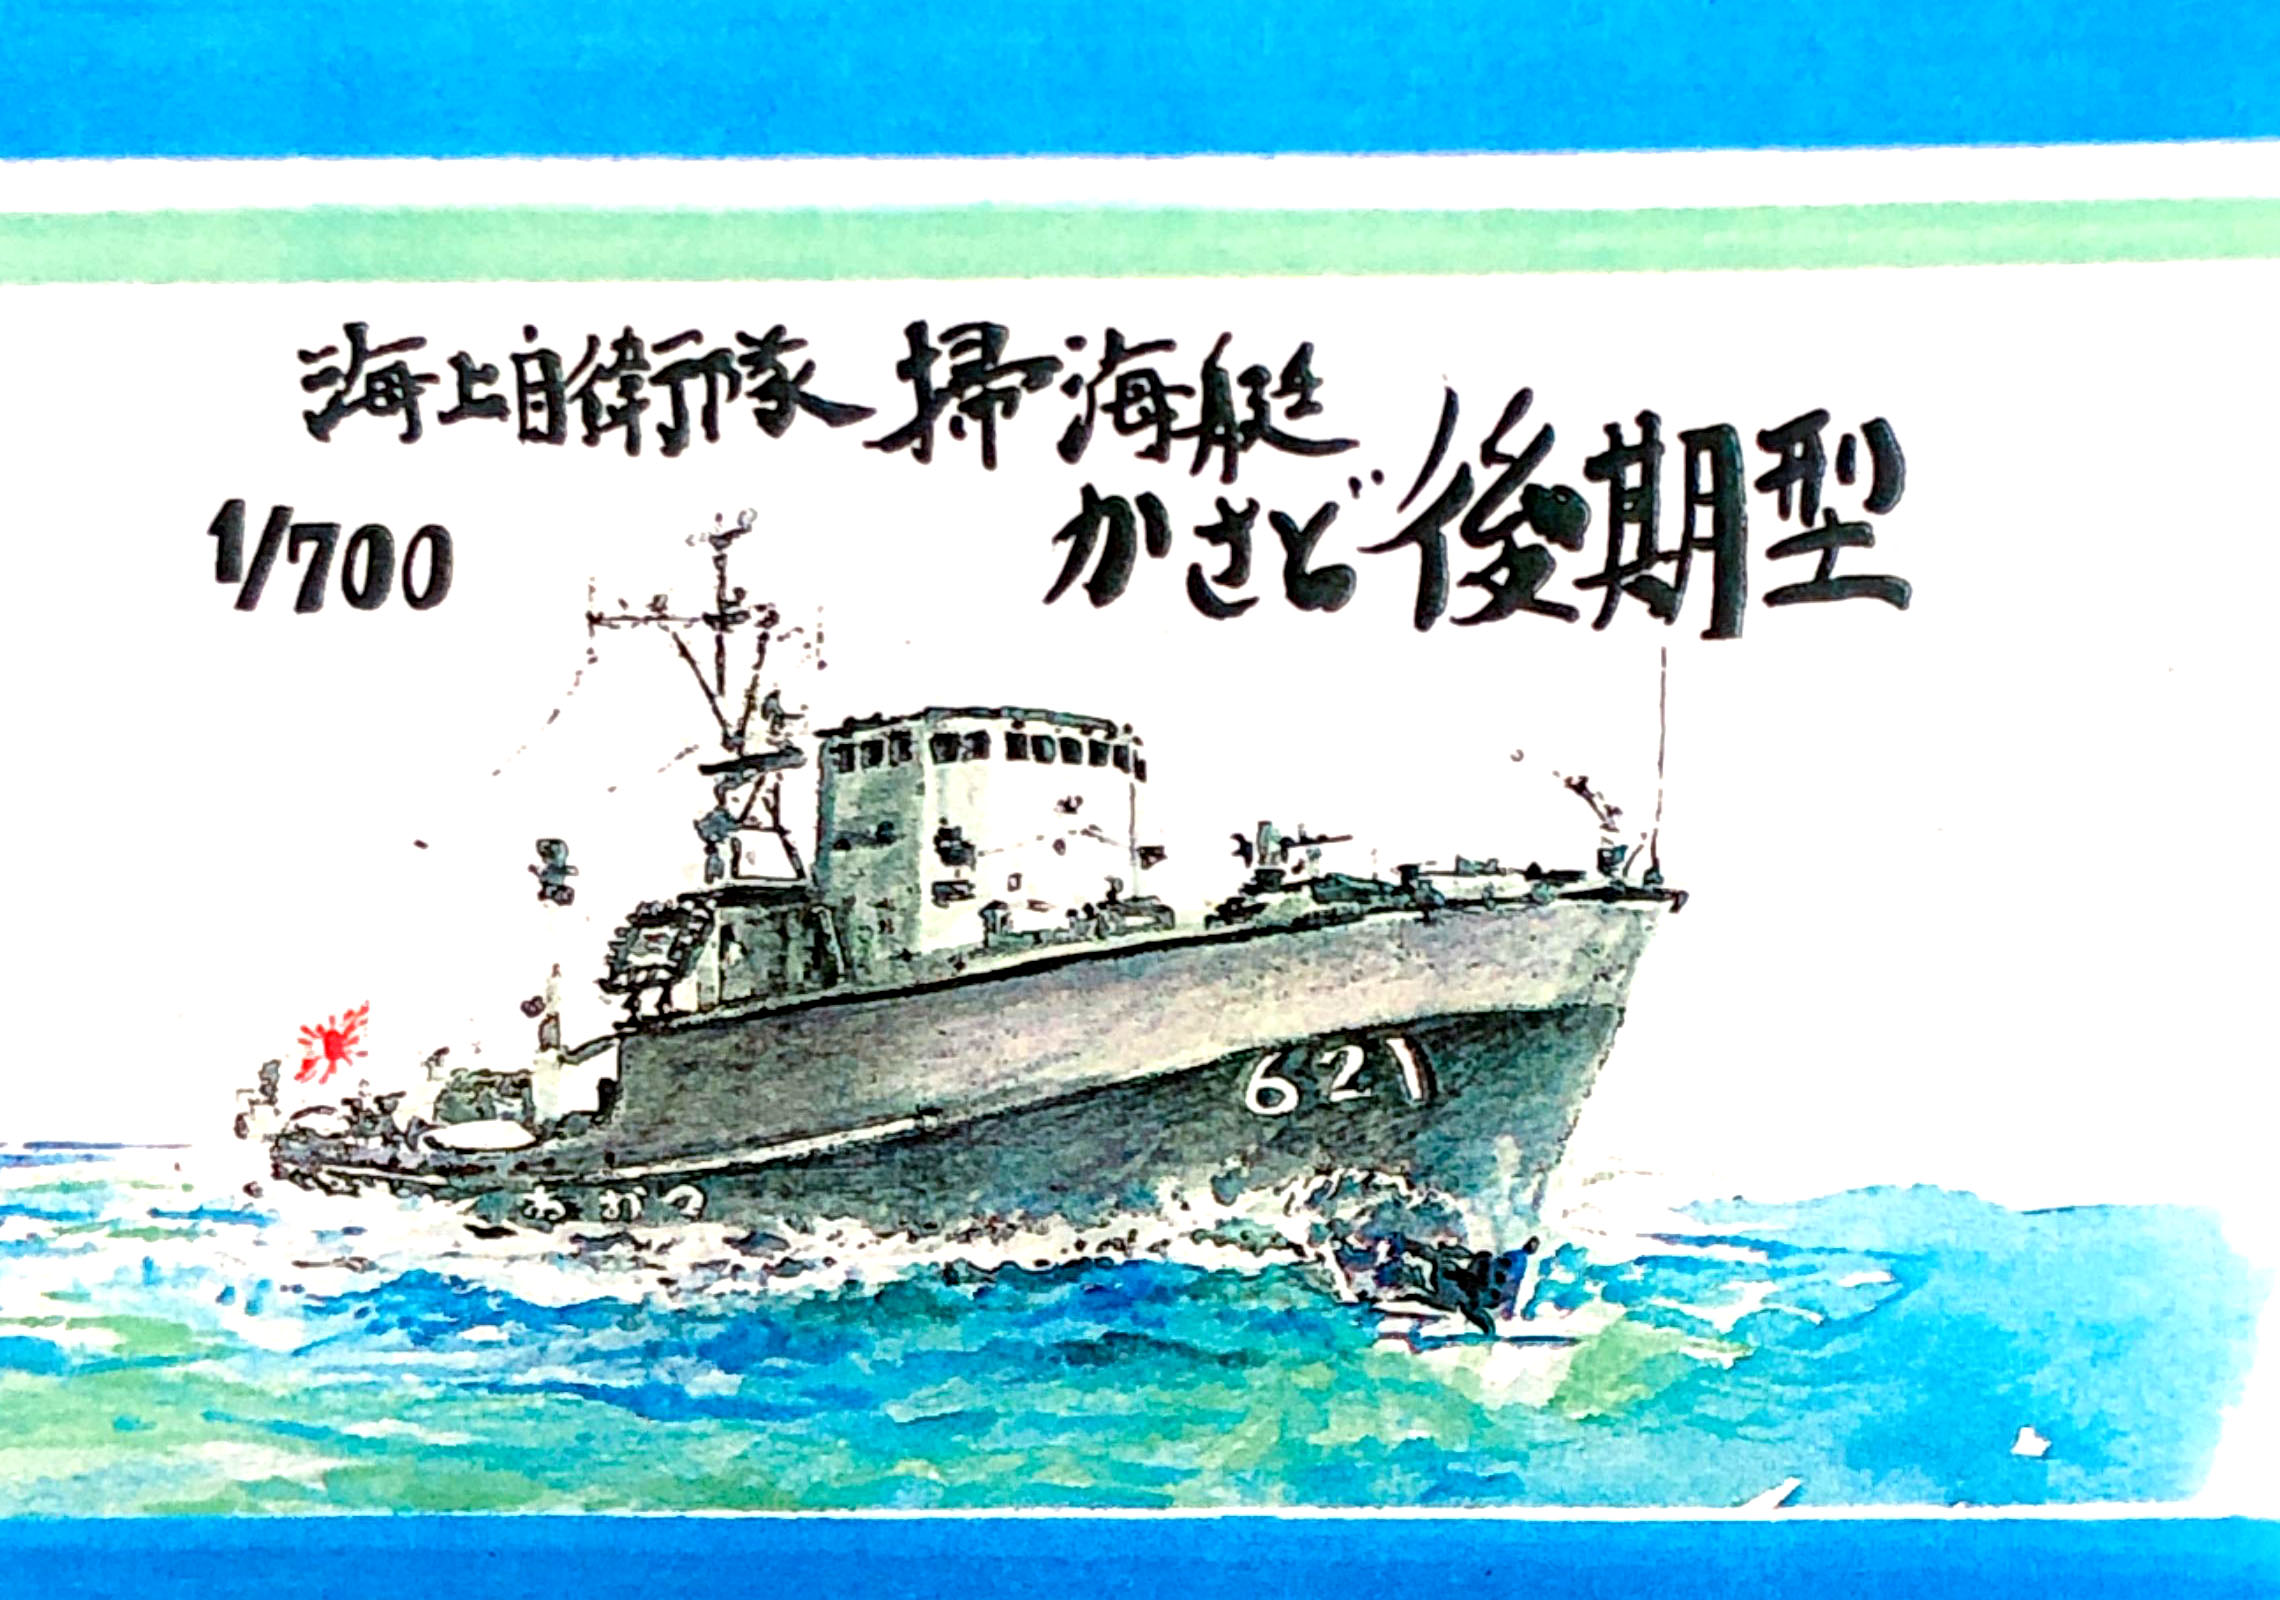 紙でコロコロ 1/700「海上自衛隊 掃海艇 かさど型 後期型」入荷しました。